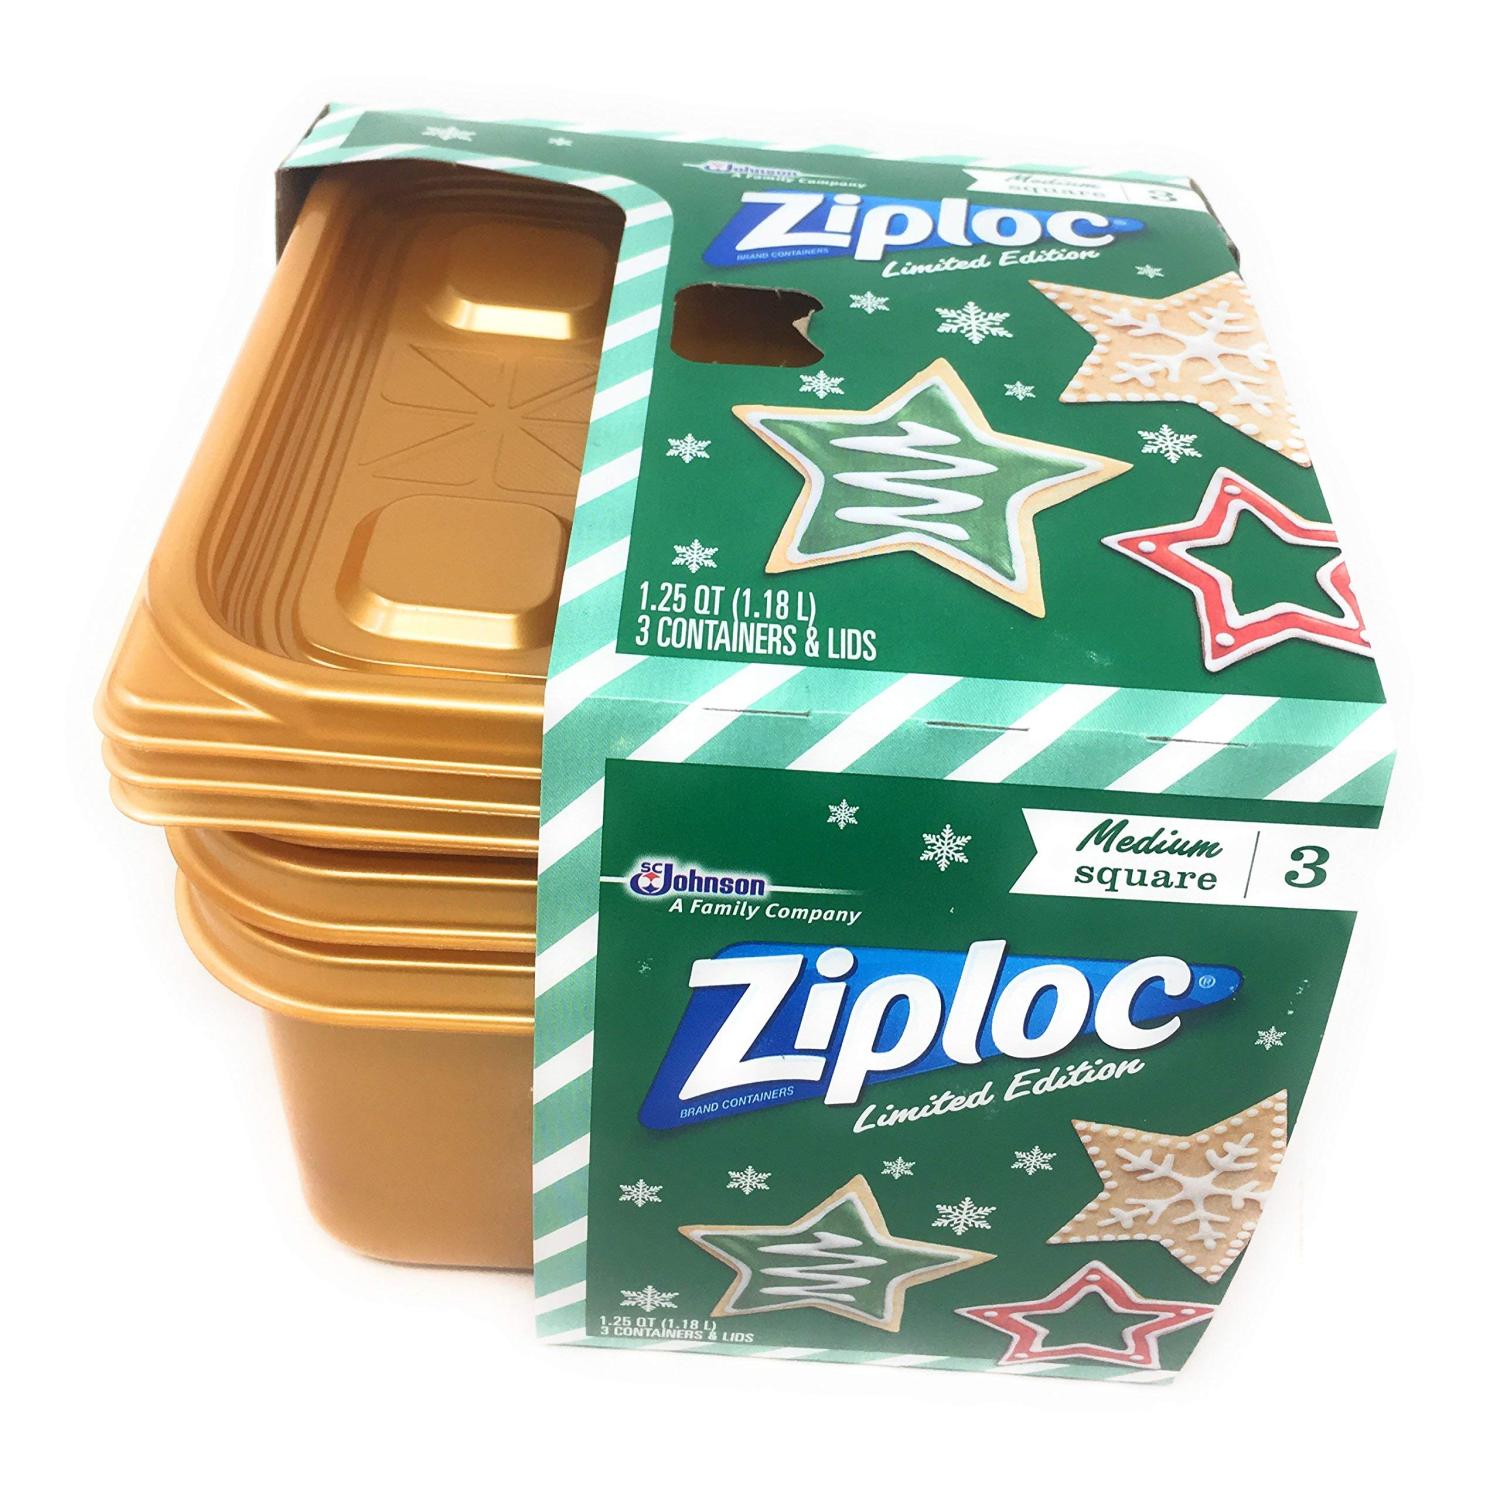 Ziploc Containers & Lids, Square, Medium, 1.25 Quart